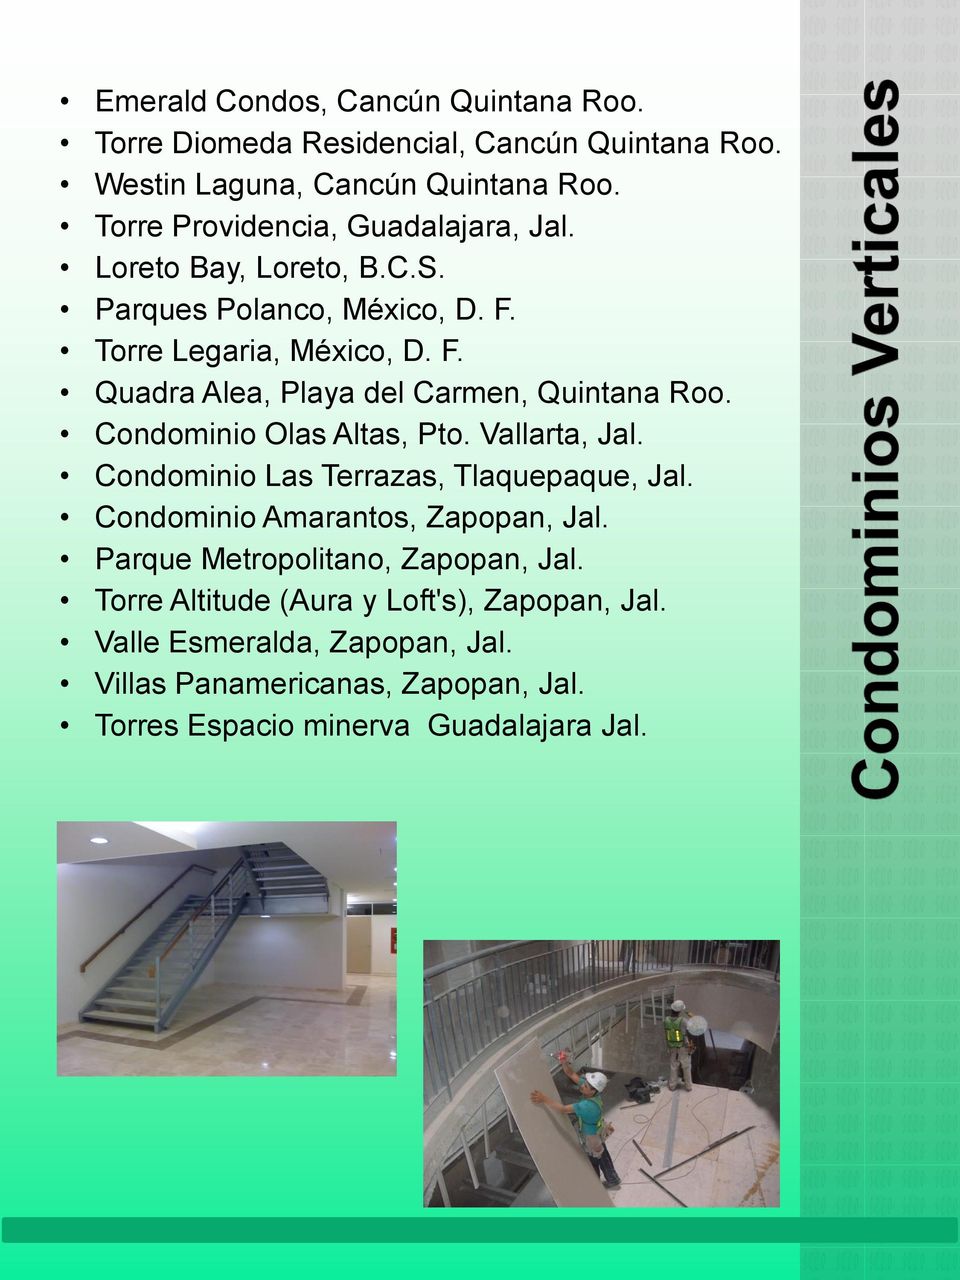 Condominio Olas Altas, Pto. Vallarta, Jal. Condominio Las Terrazas, Tlaquepaque, Jal. Condominio Amarantos, Zapopan, Jal.